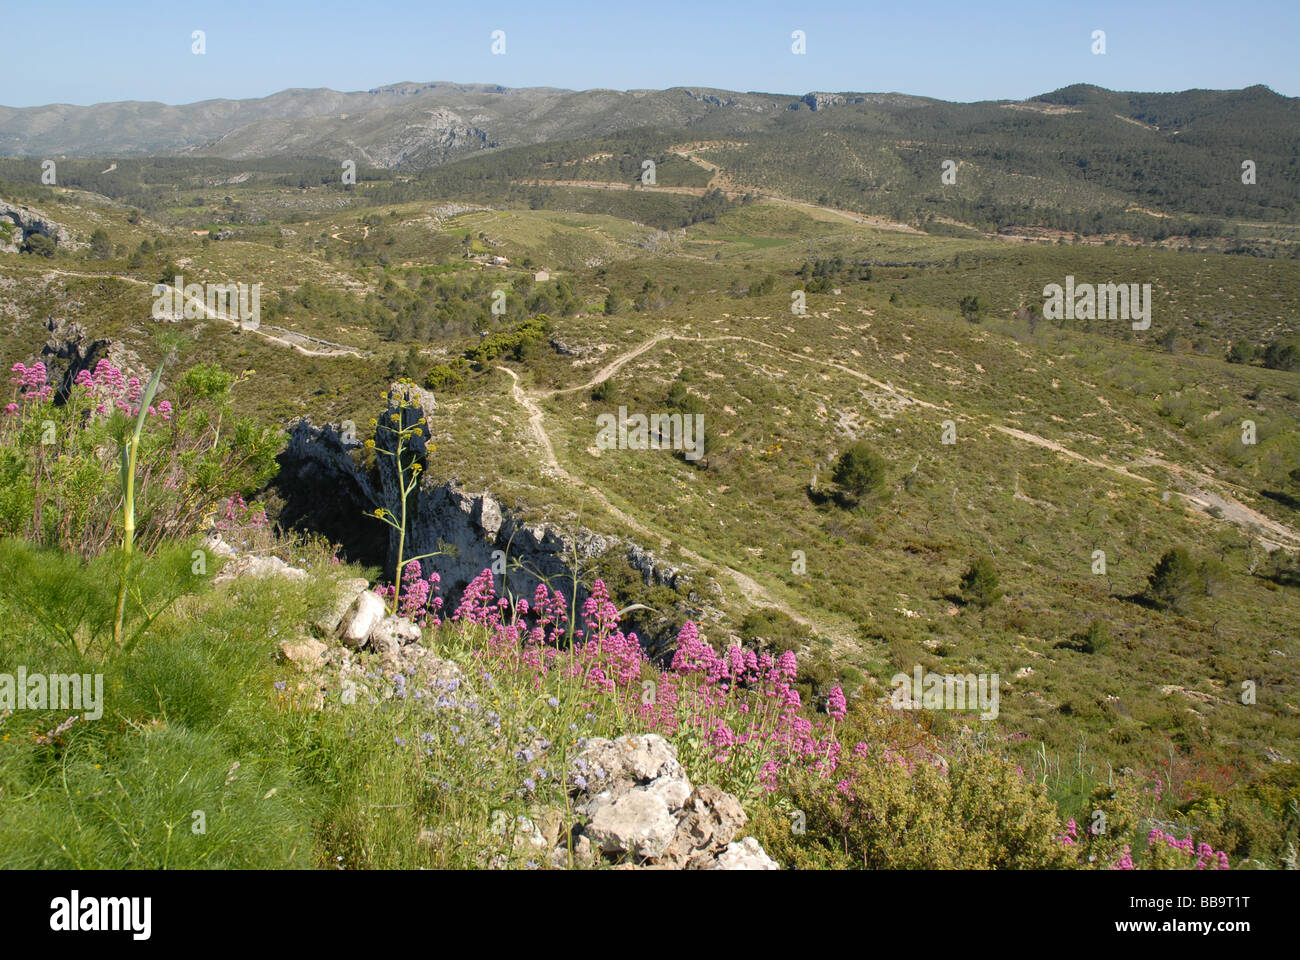 Sierra de La Forada, near Alcala de la Jovada, Alicante Province, Comunidad Valenciana, Spain Stock Photo